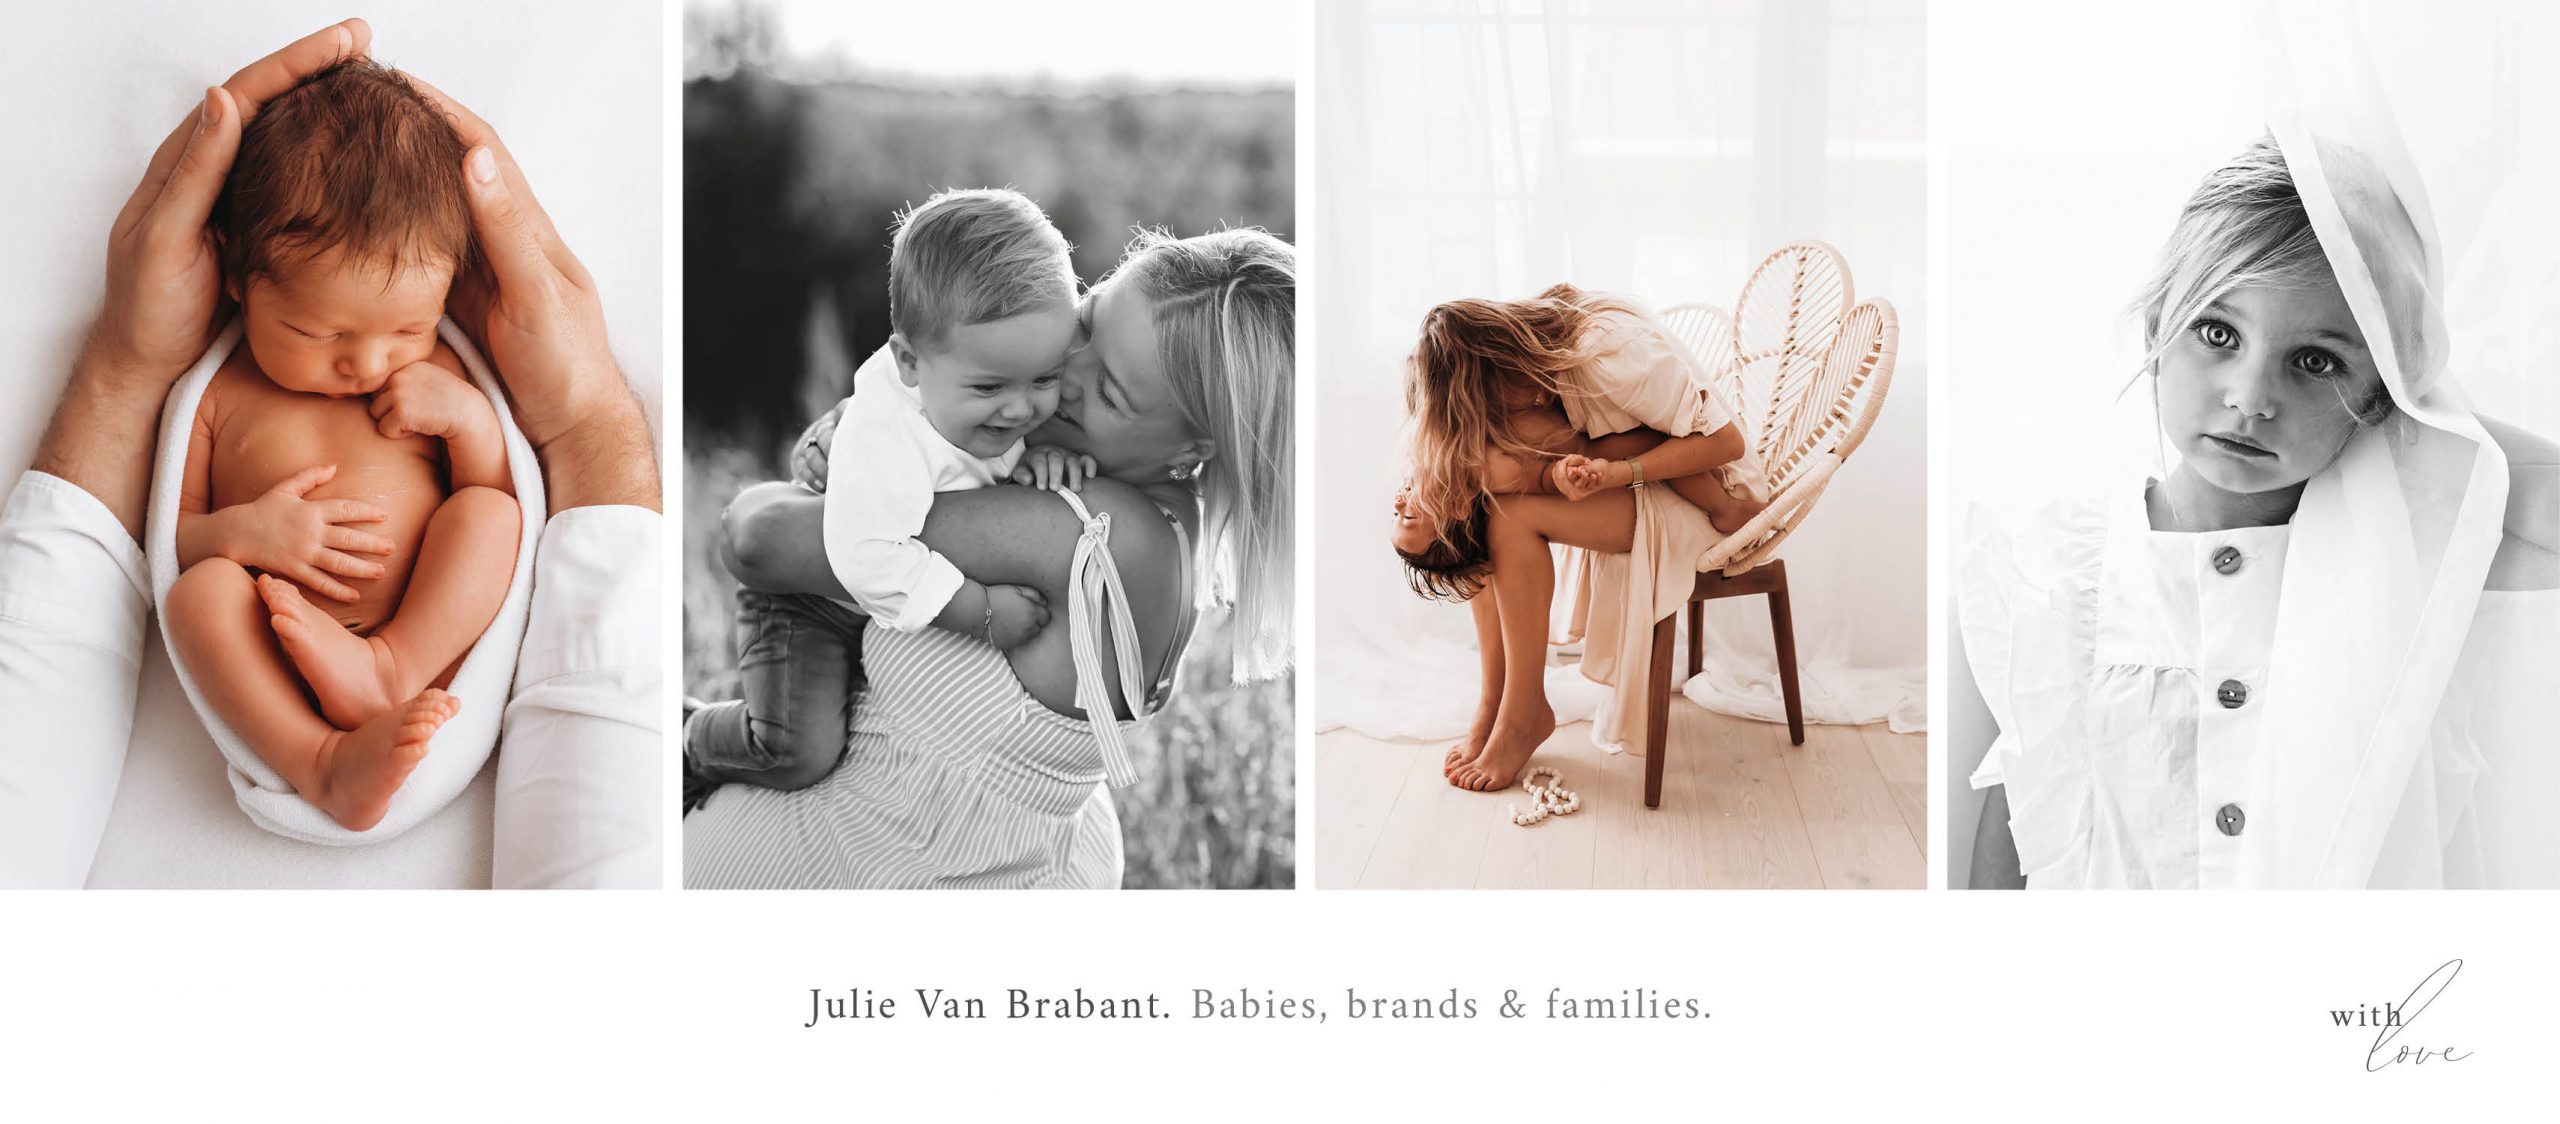 Julie Van Brabant noirdesign fotografe expert onder mama's